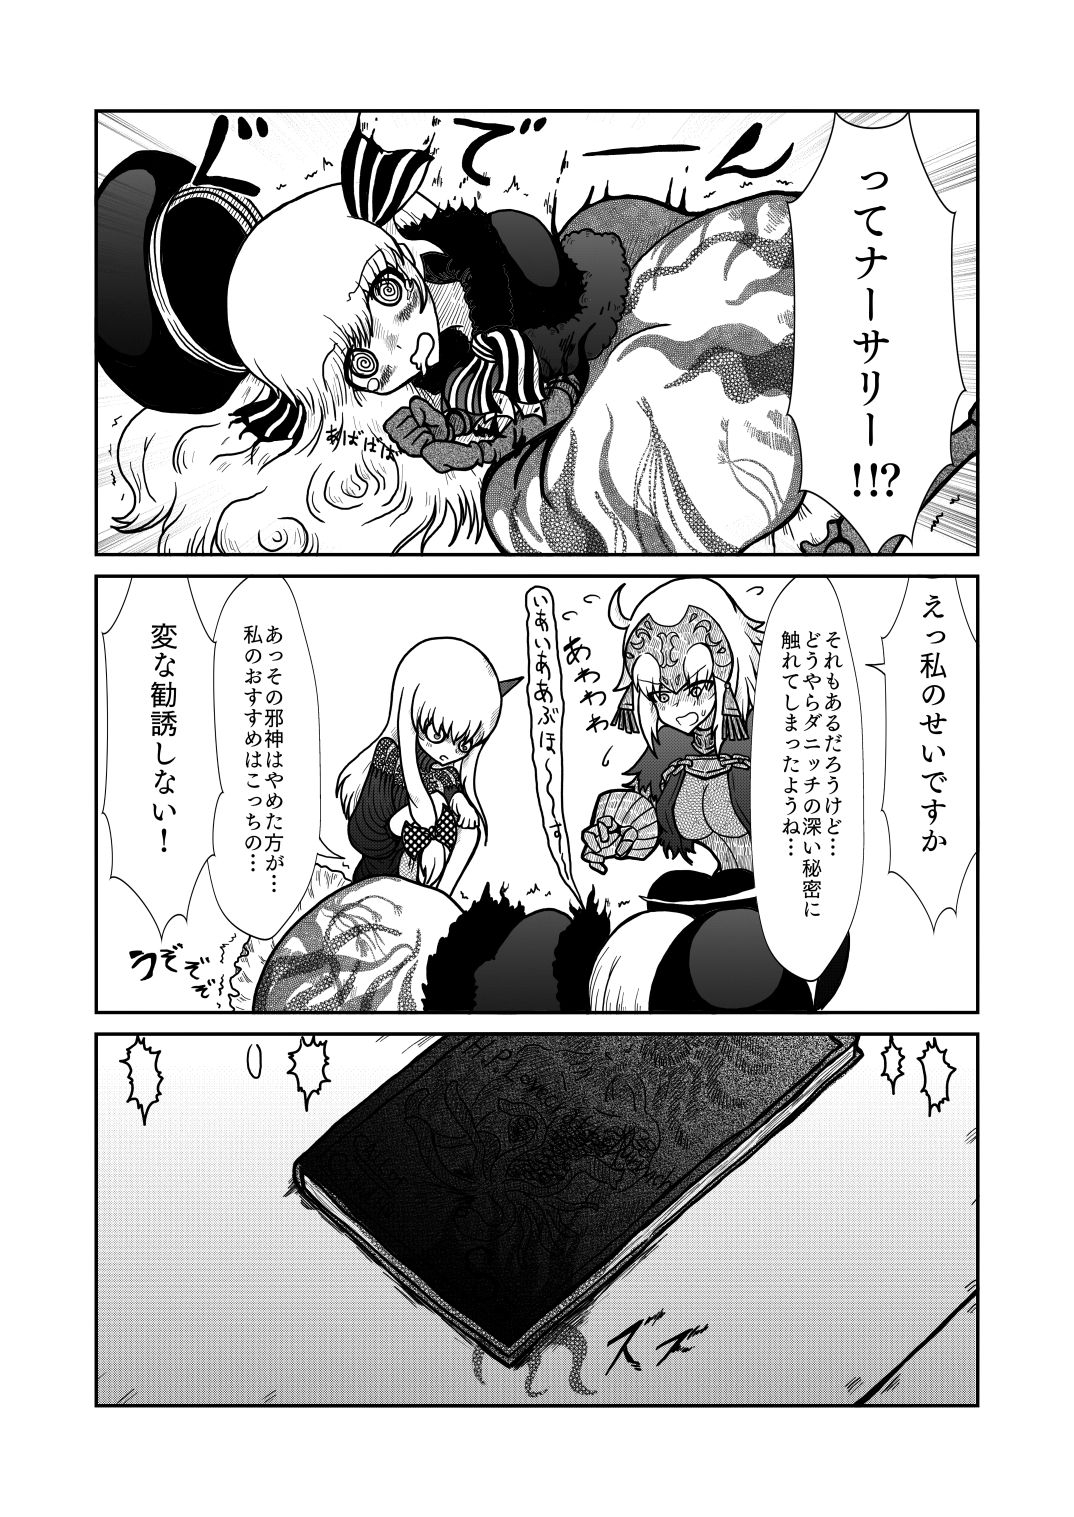 [Shigato] Jeanne x Lavi Dunwich Kai Kikou (Fate/Grand Order, Cthulhu Mythos) [Digital] 31